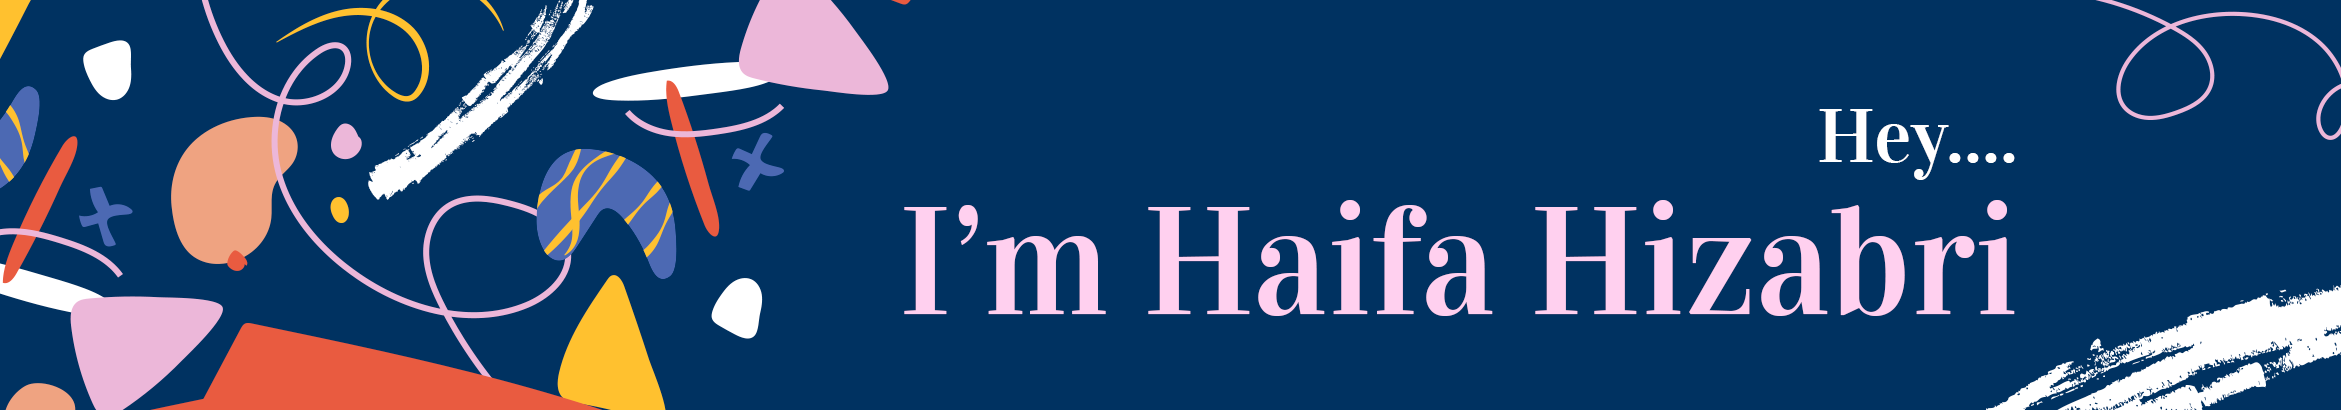 'Haifa Hizabri's profile banner